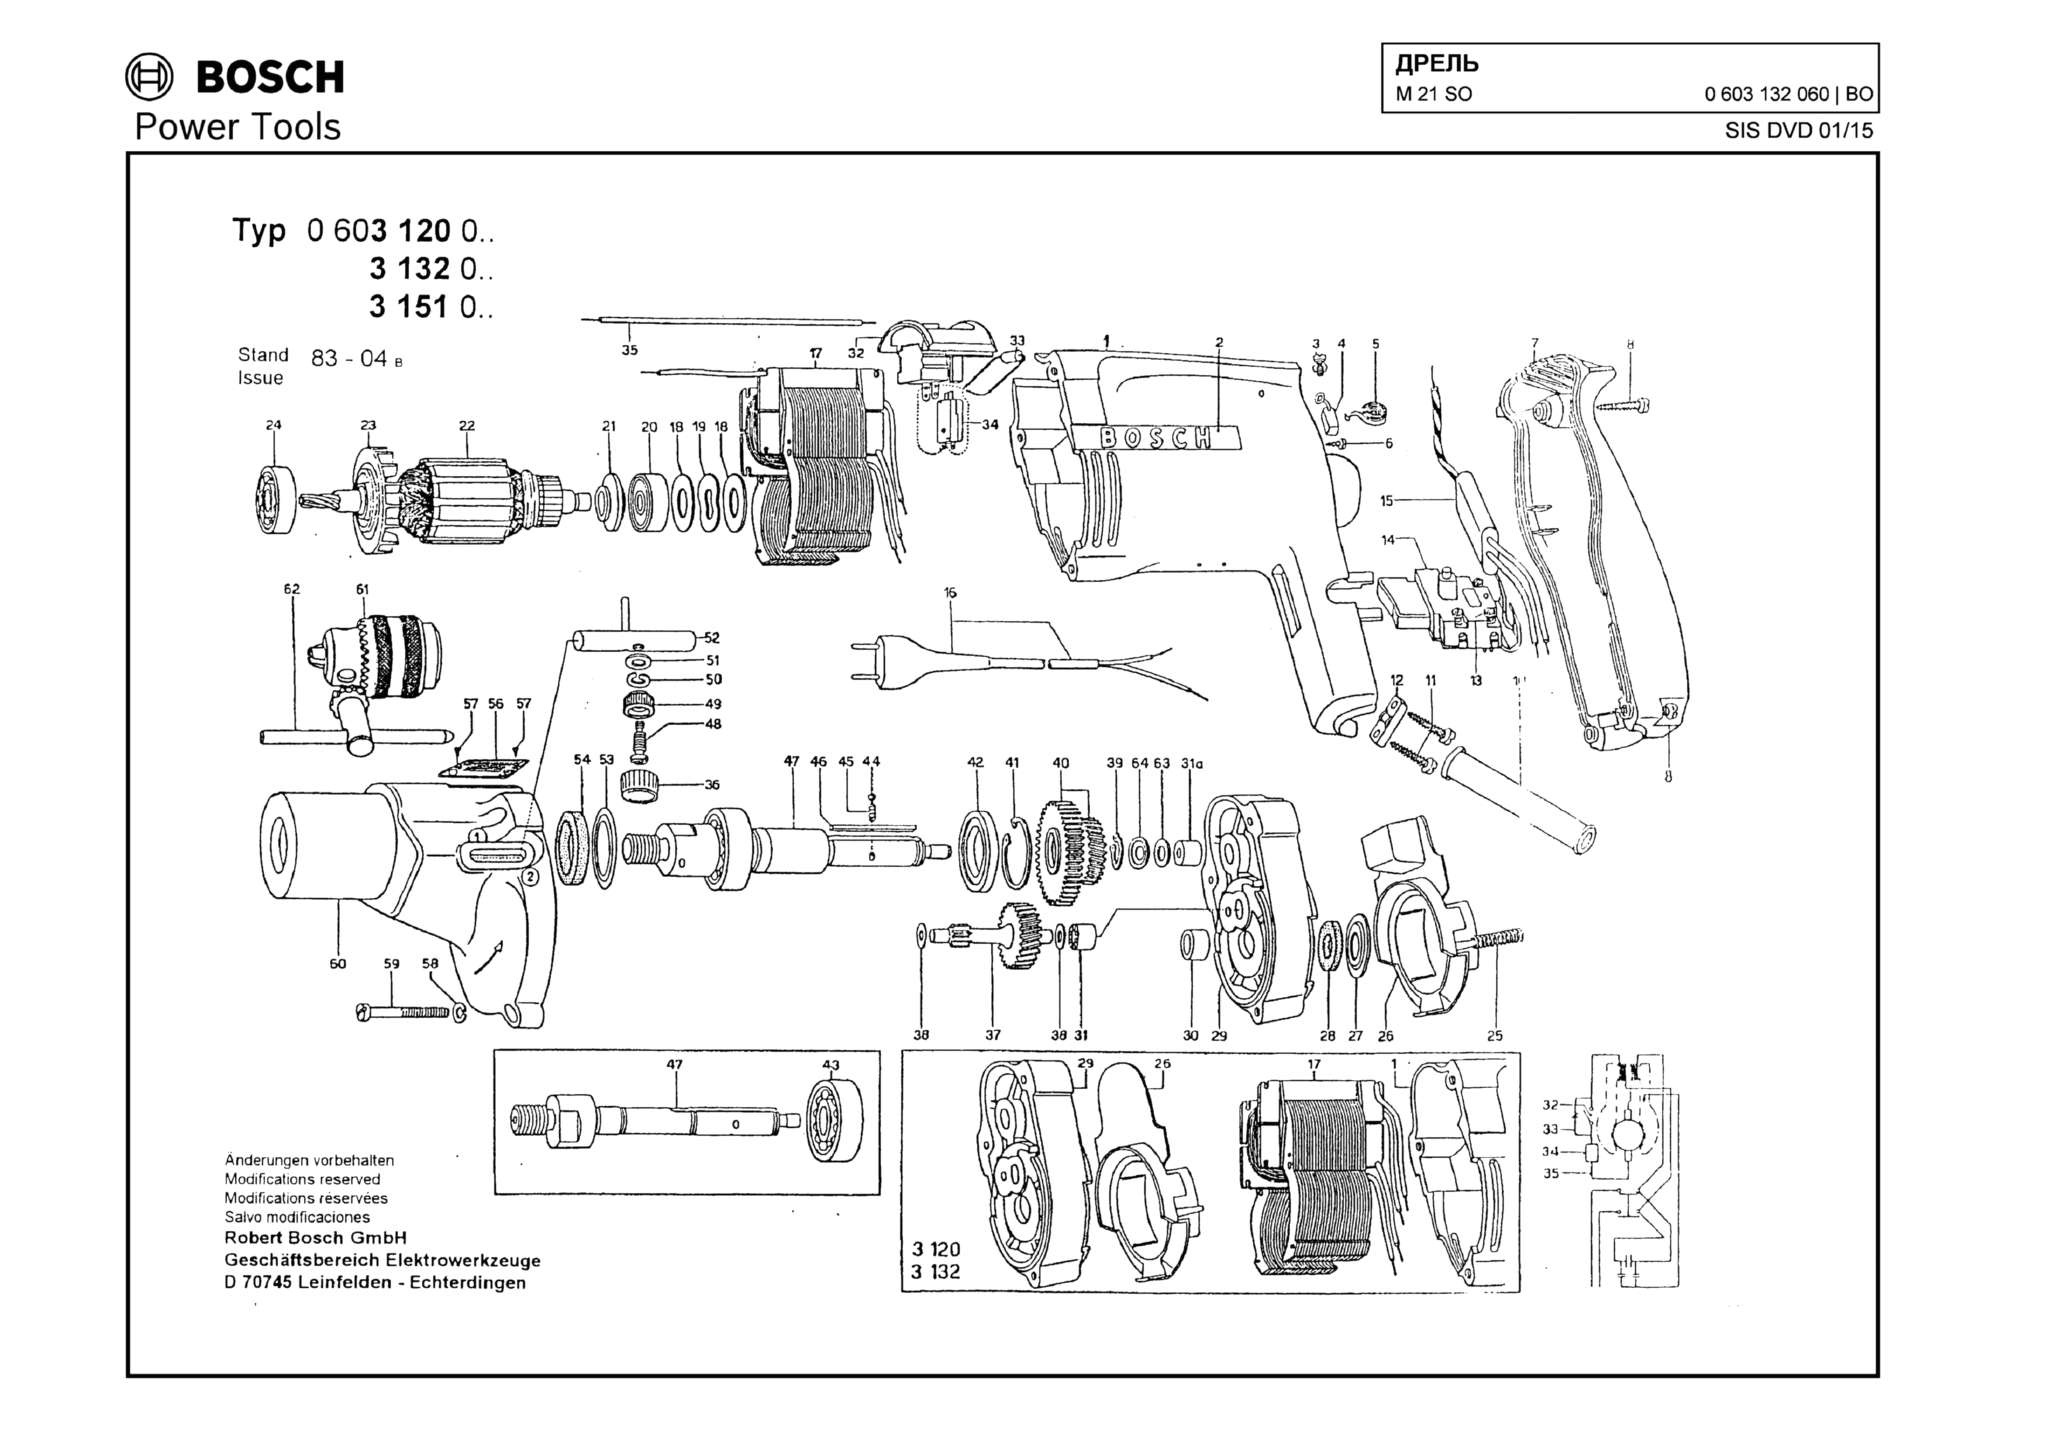 Запчасти, схема и деталировка Bosch M 21 SO (ТИП 0603132060)